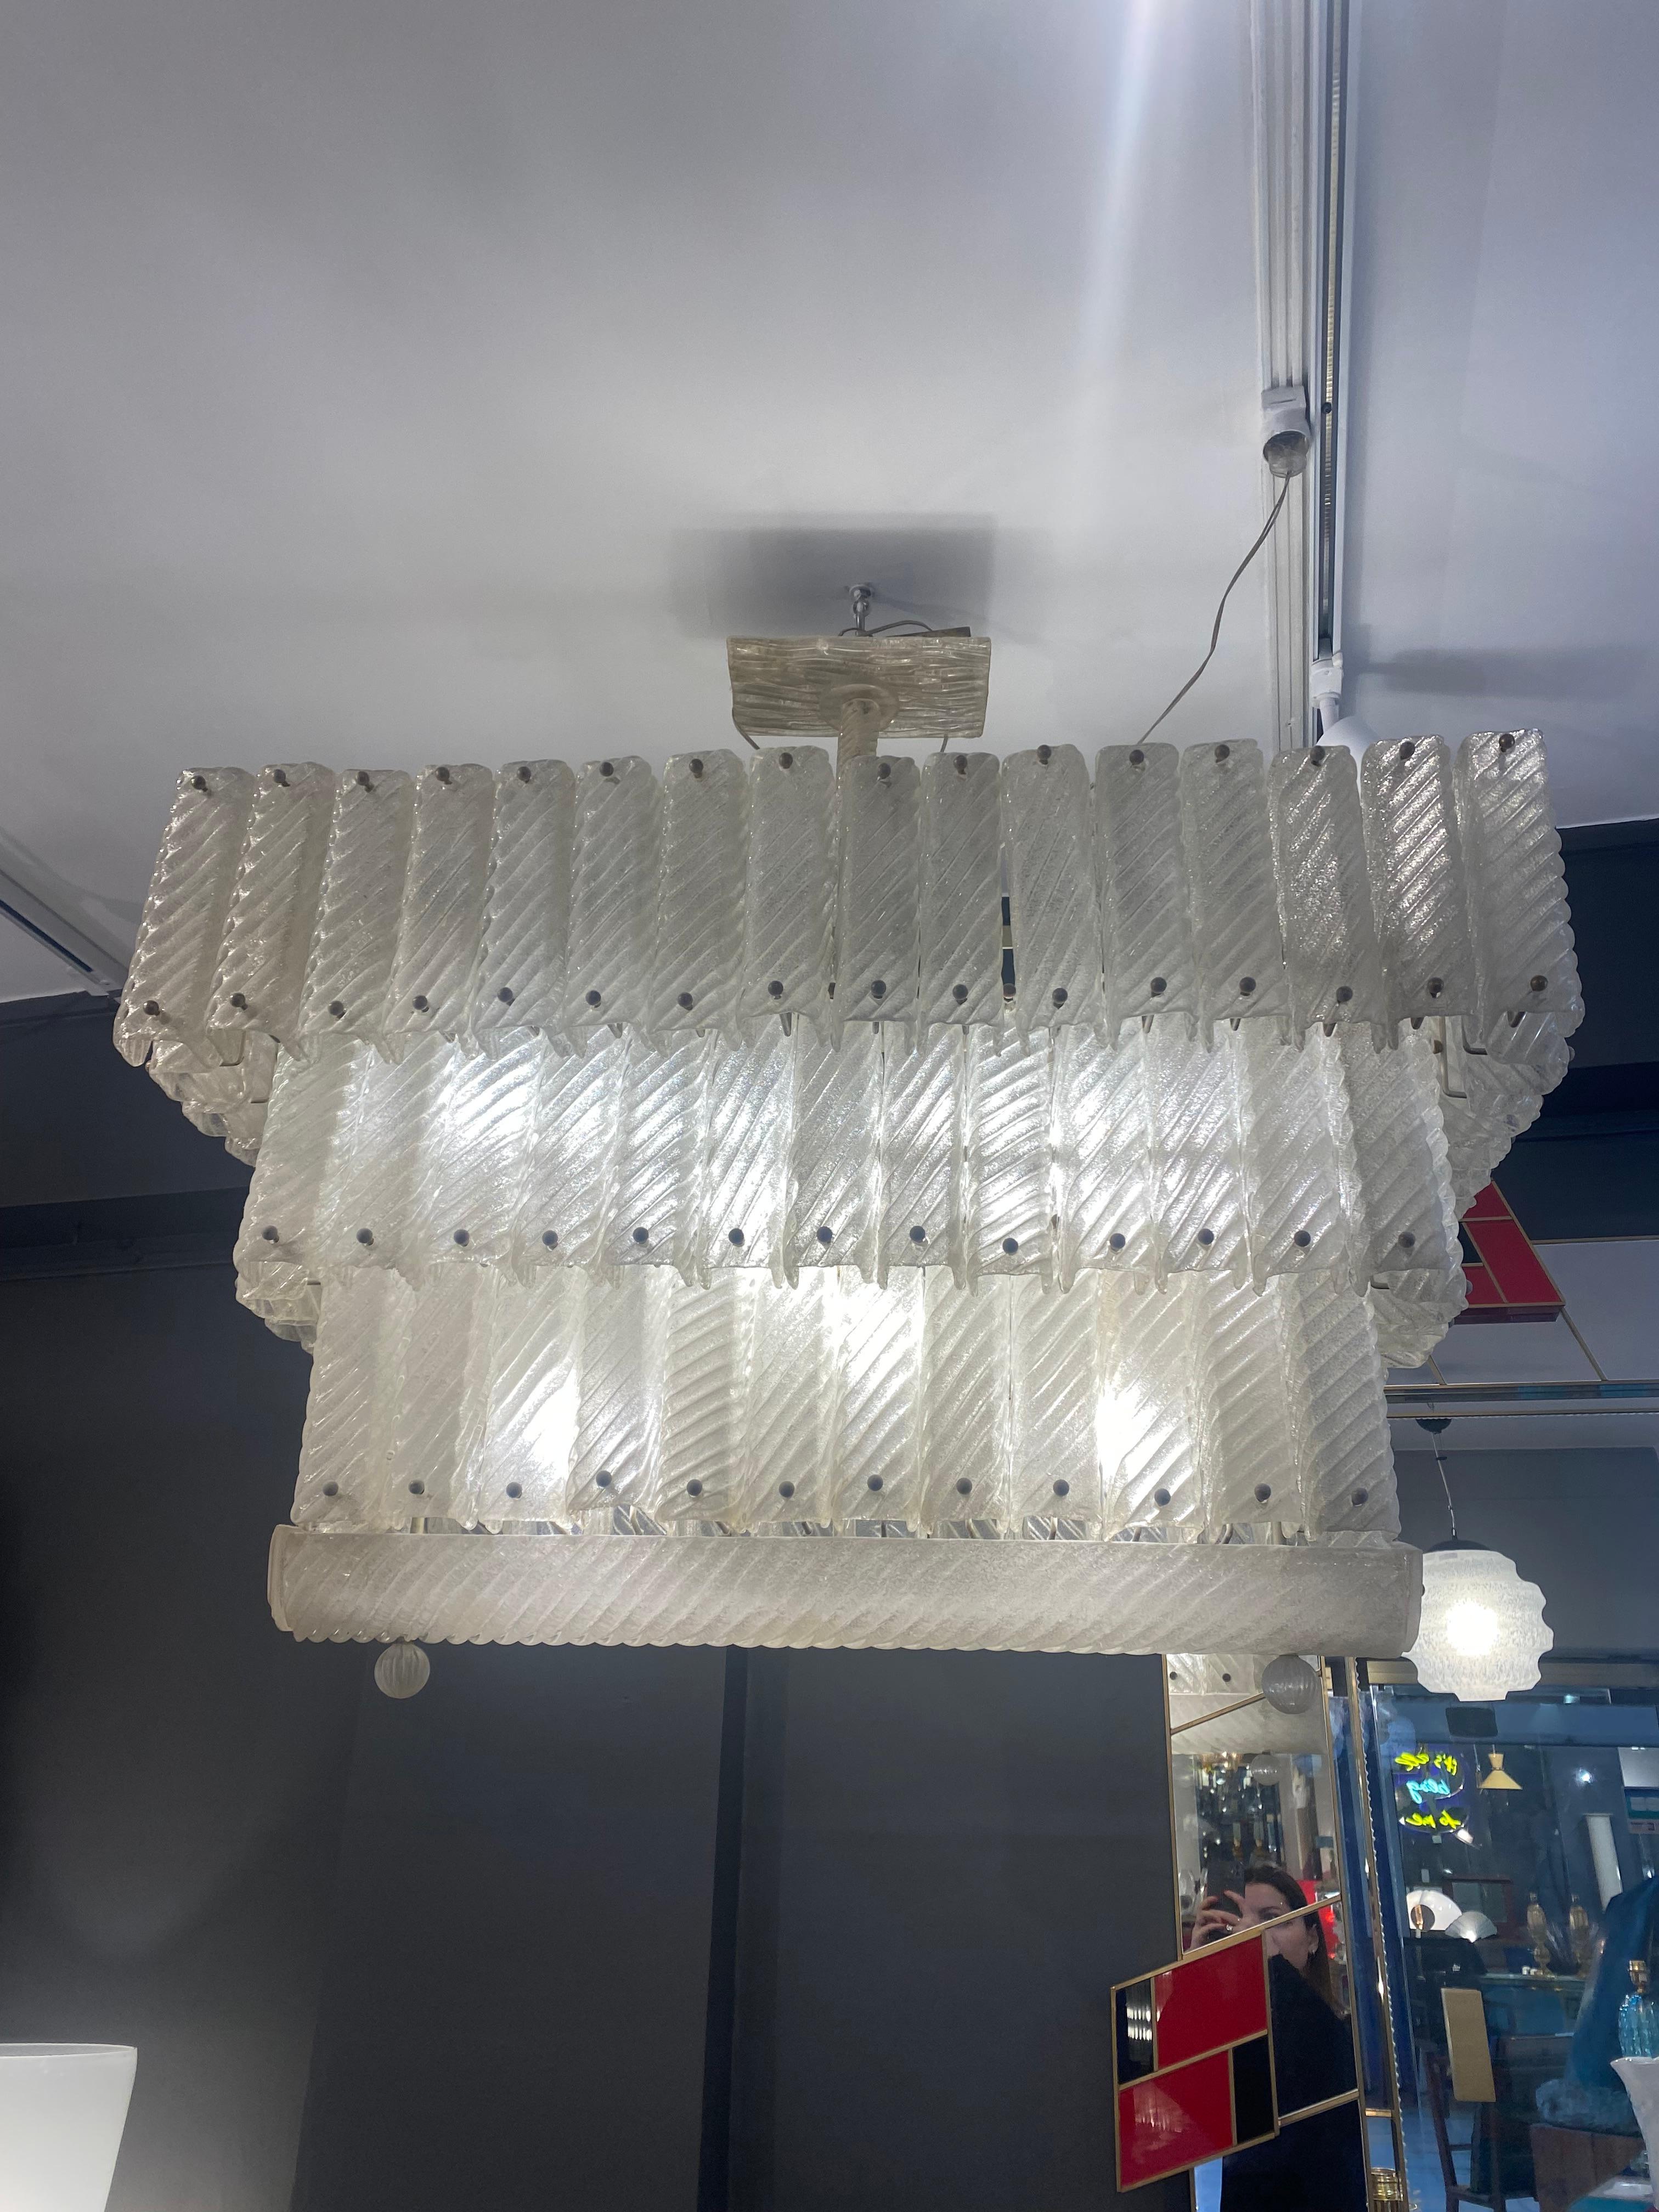 Lustre en verre de Murano - Circa 1950.
Trois niveaux en lustre / plaques de verre strié.
Dimensions : 110 x 105 x 50cm.
En parfait état.